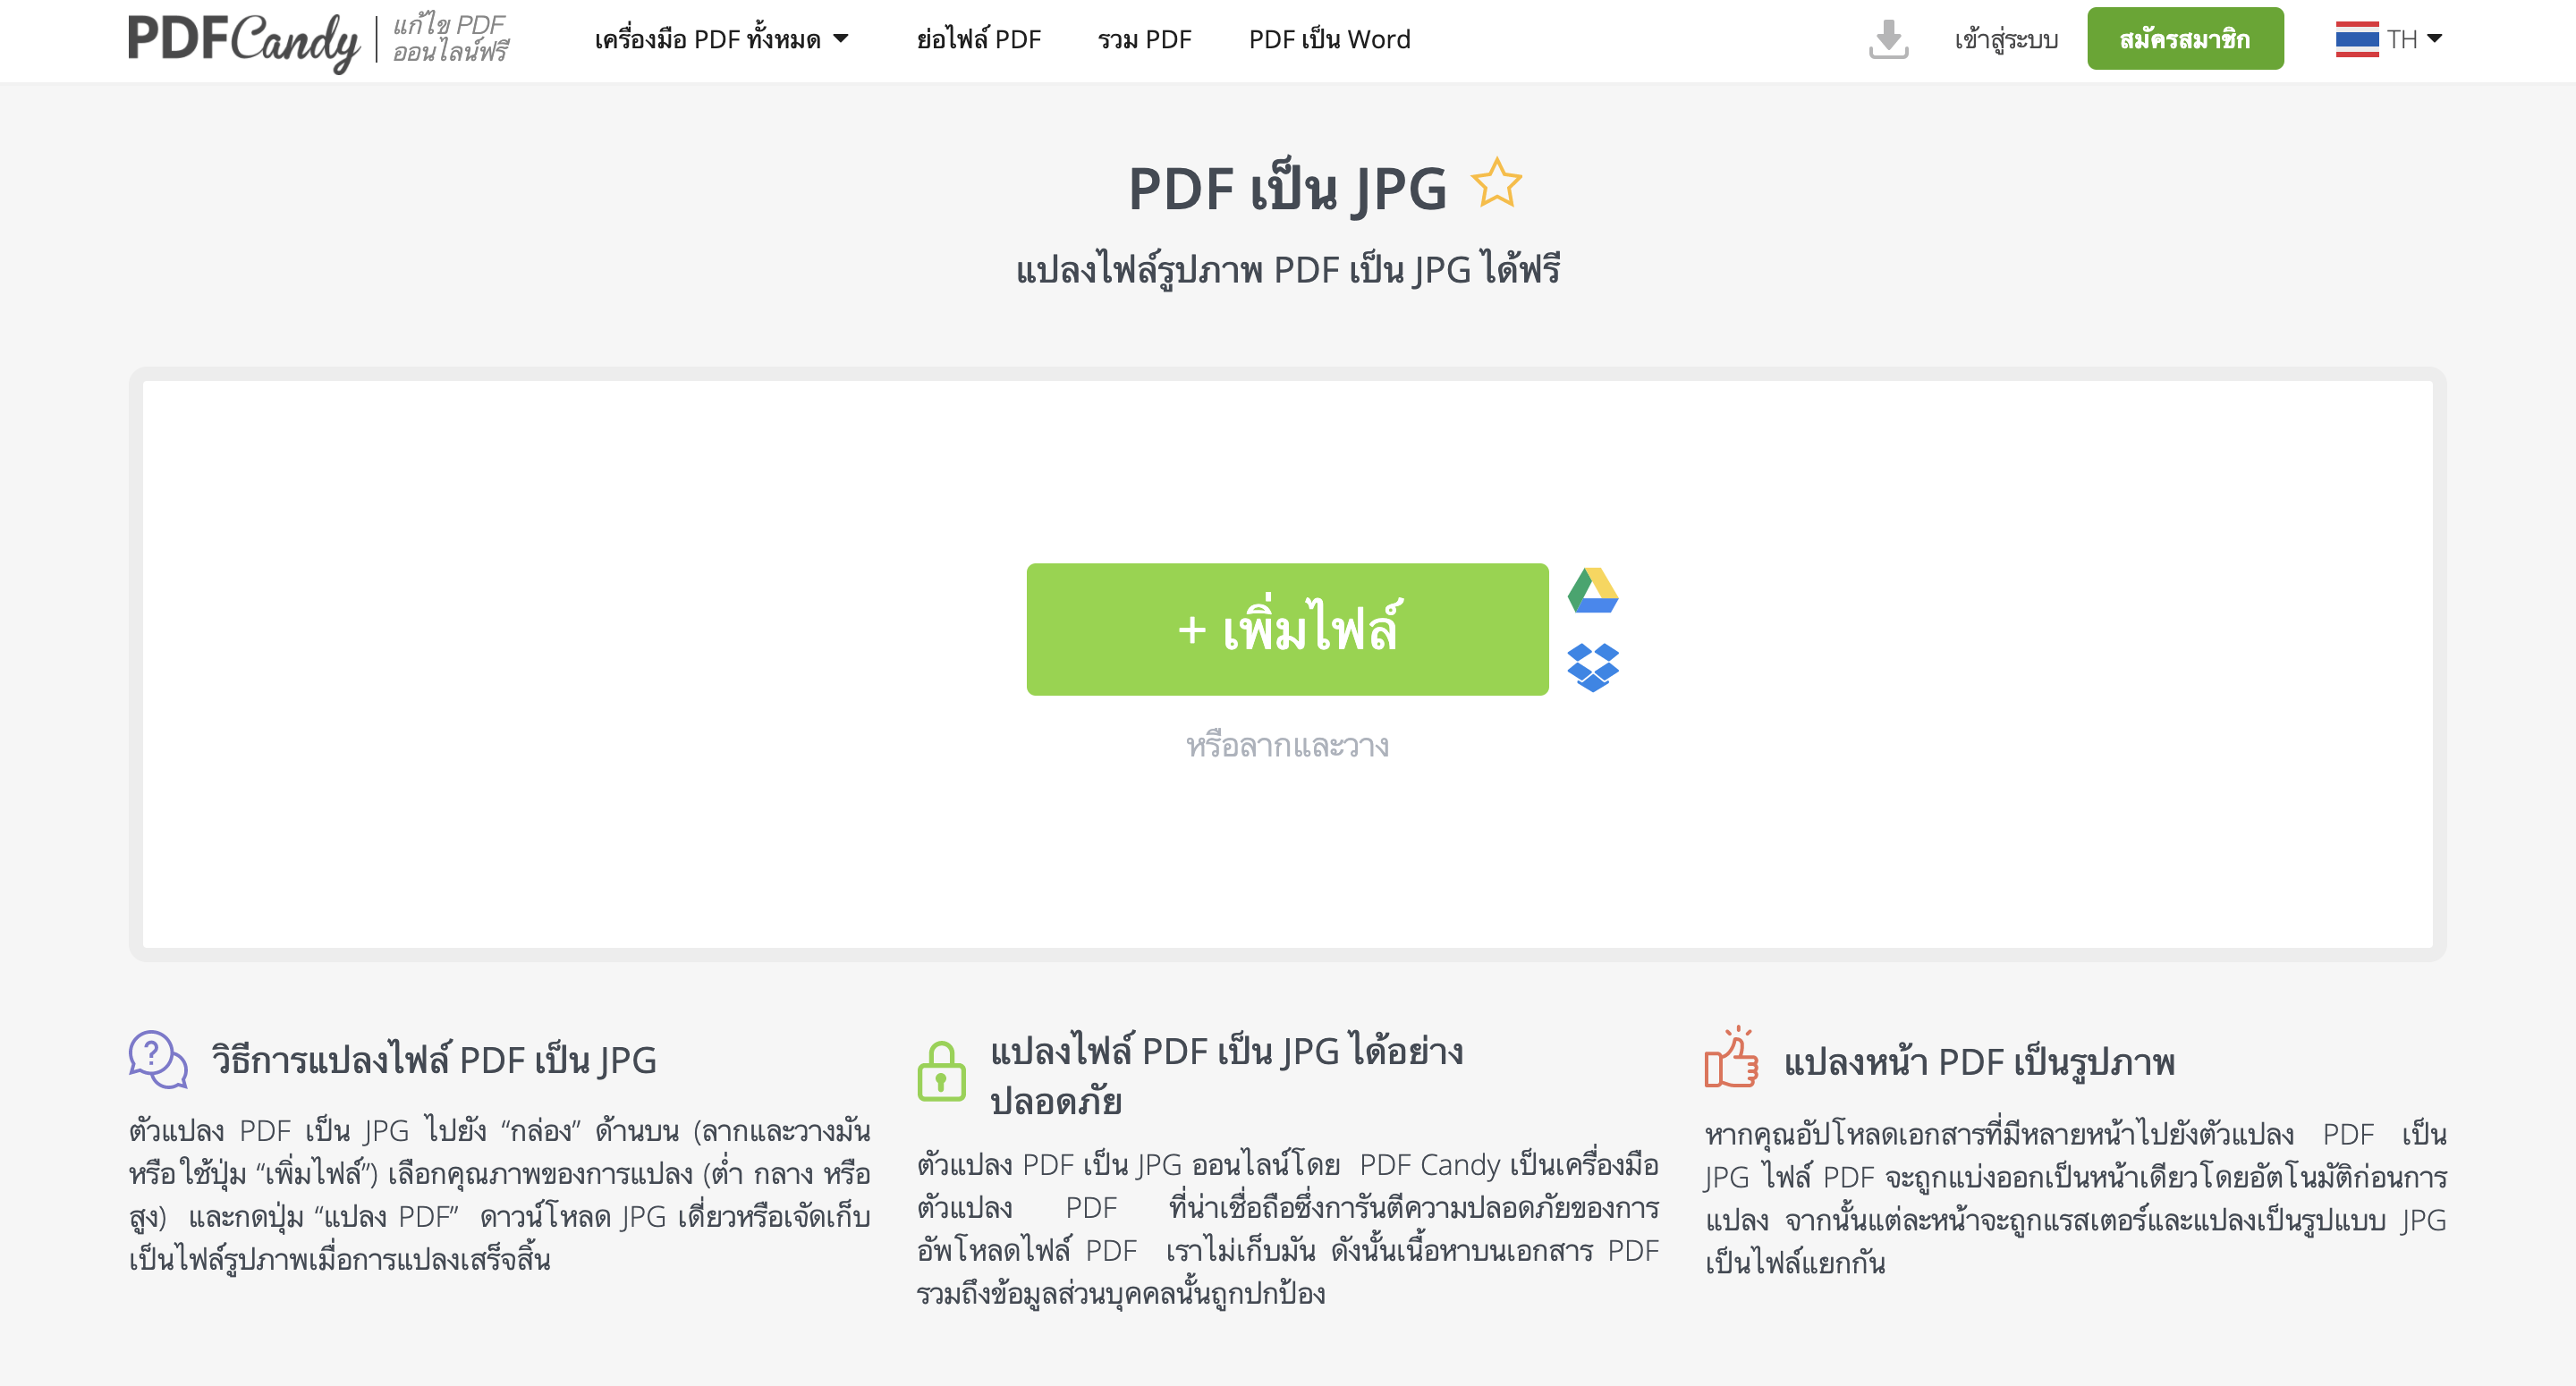 รวมเว็บแปลงไฟล์ Pdf เป็น Jpg ฟรี ภาพไม่เพี้ยน | Blognone